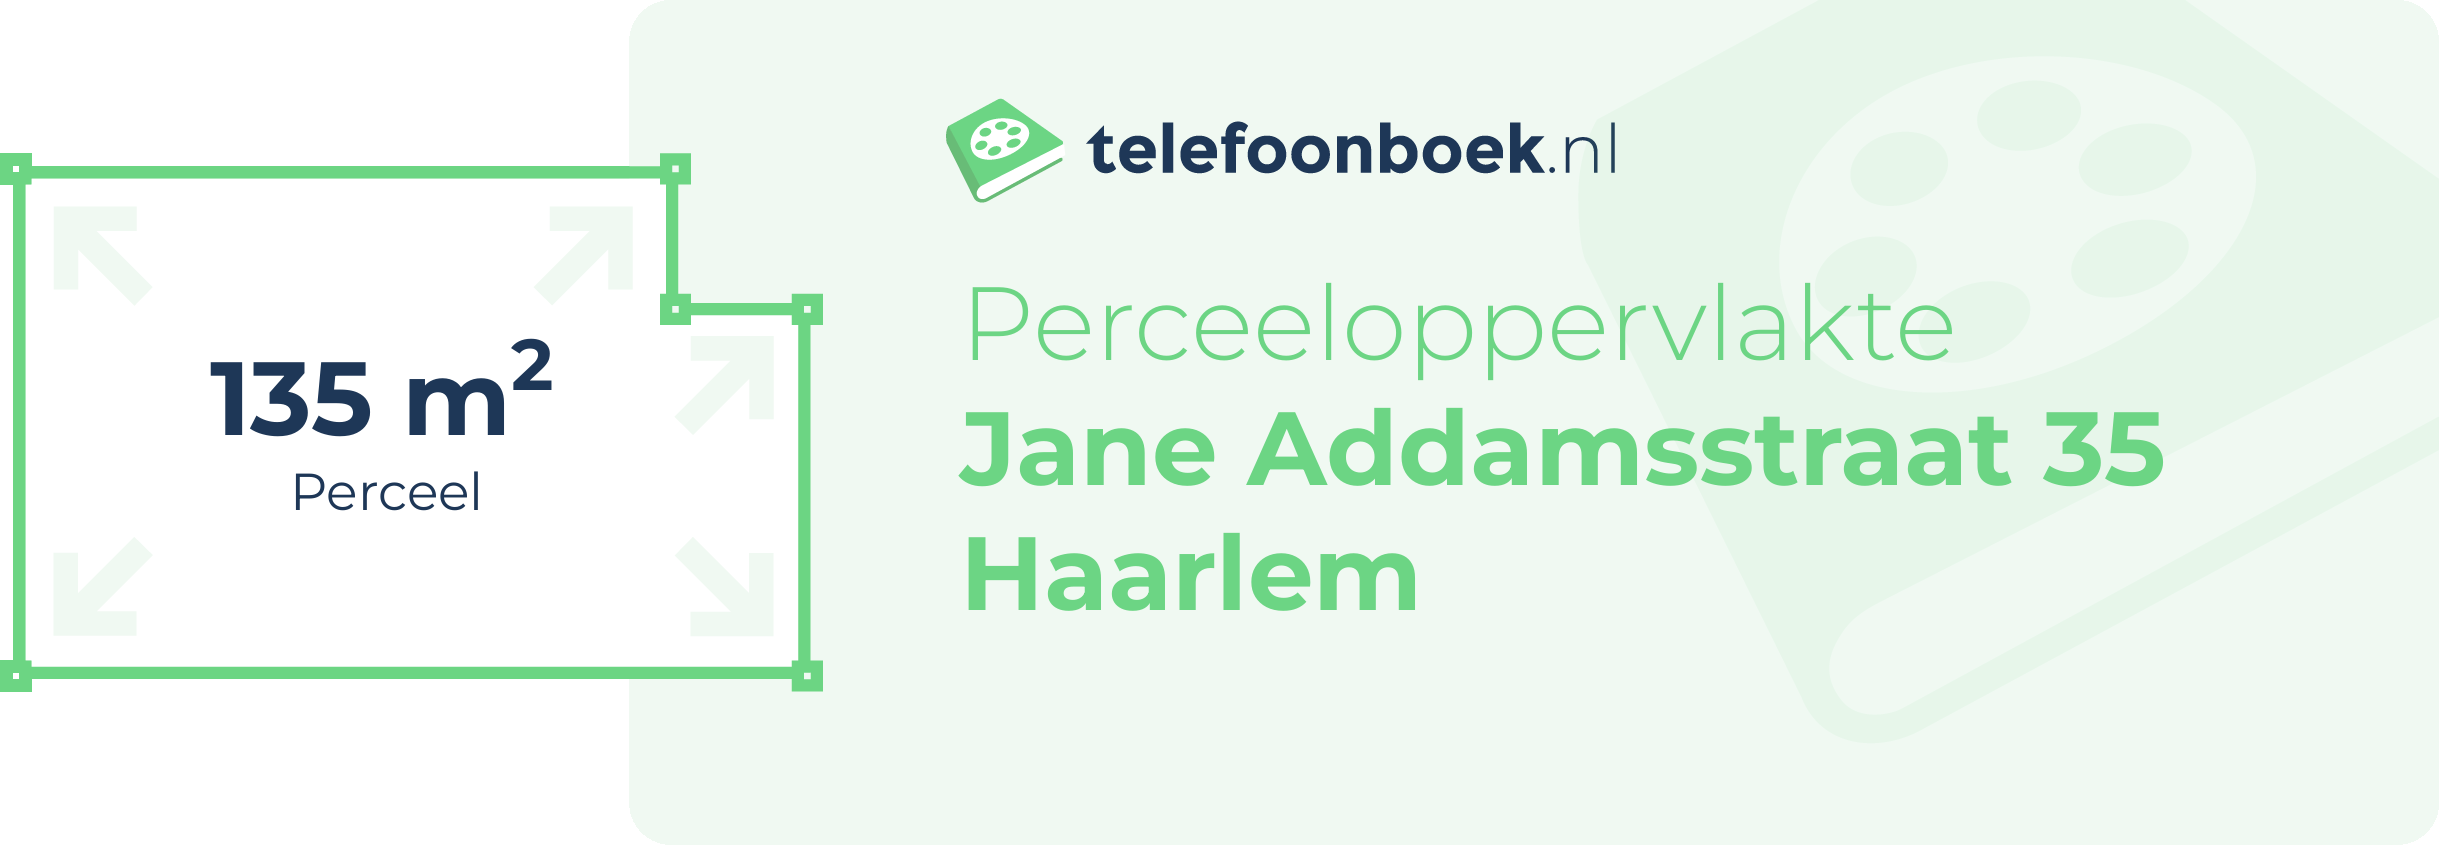 Perceeloppervlakte Jane Addamsstraat 35 Haarlem